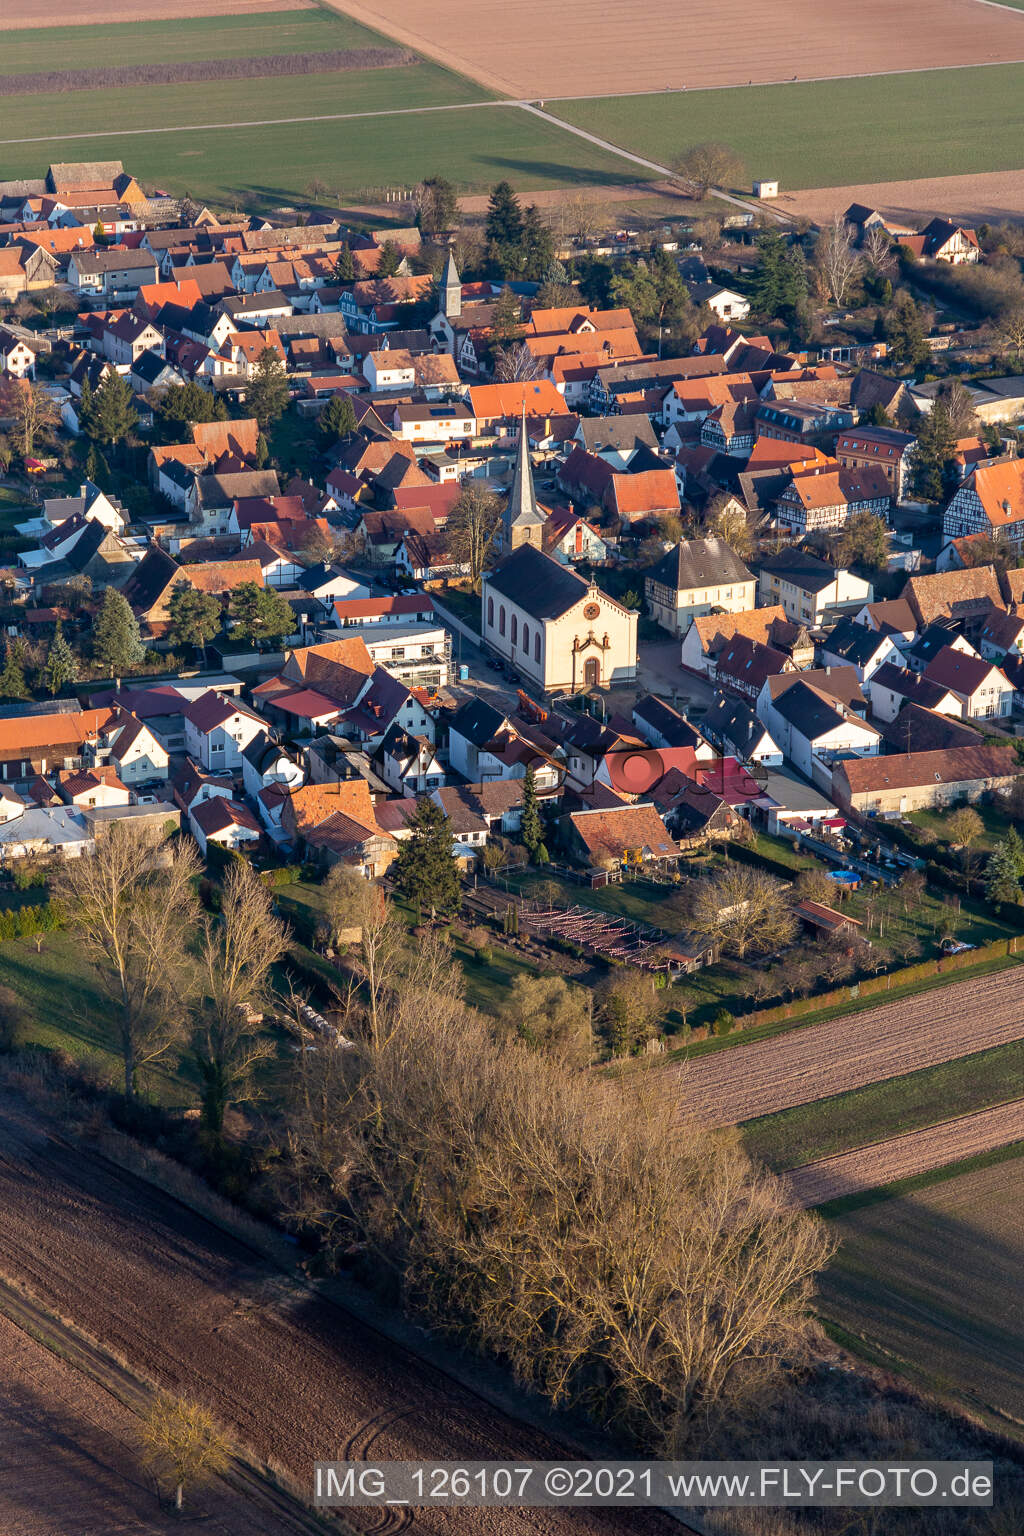 Vue aérienne de Bâtiment d'église au centre du village à Knittelsheim dans le département Rhénanie-Palatinat, Allemagne